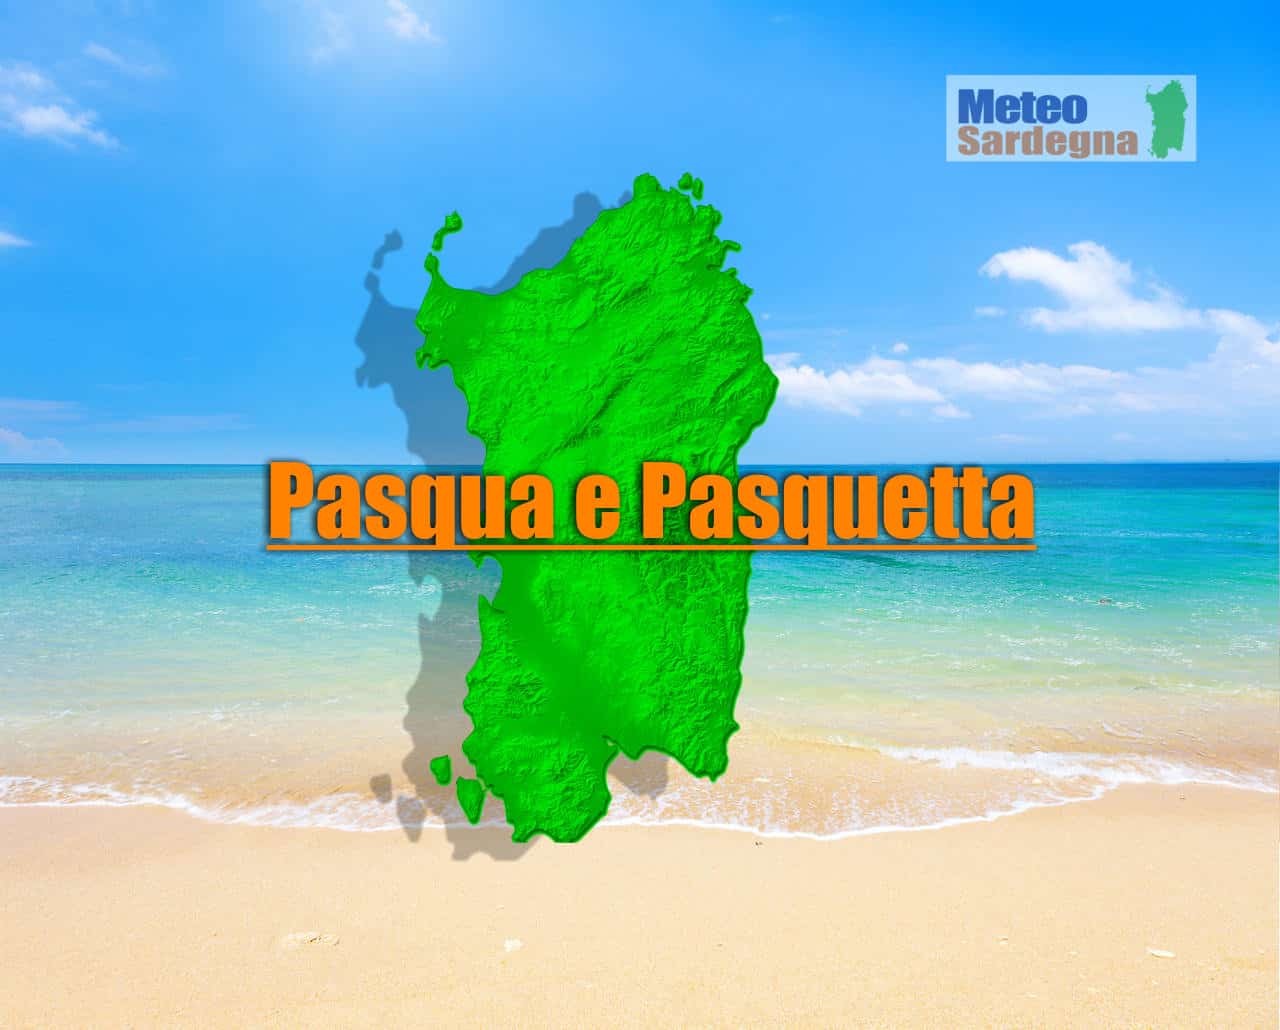 meteos - Pasqua e Pasquetta in Sardegna: ecco il meteo previsto